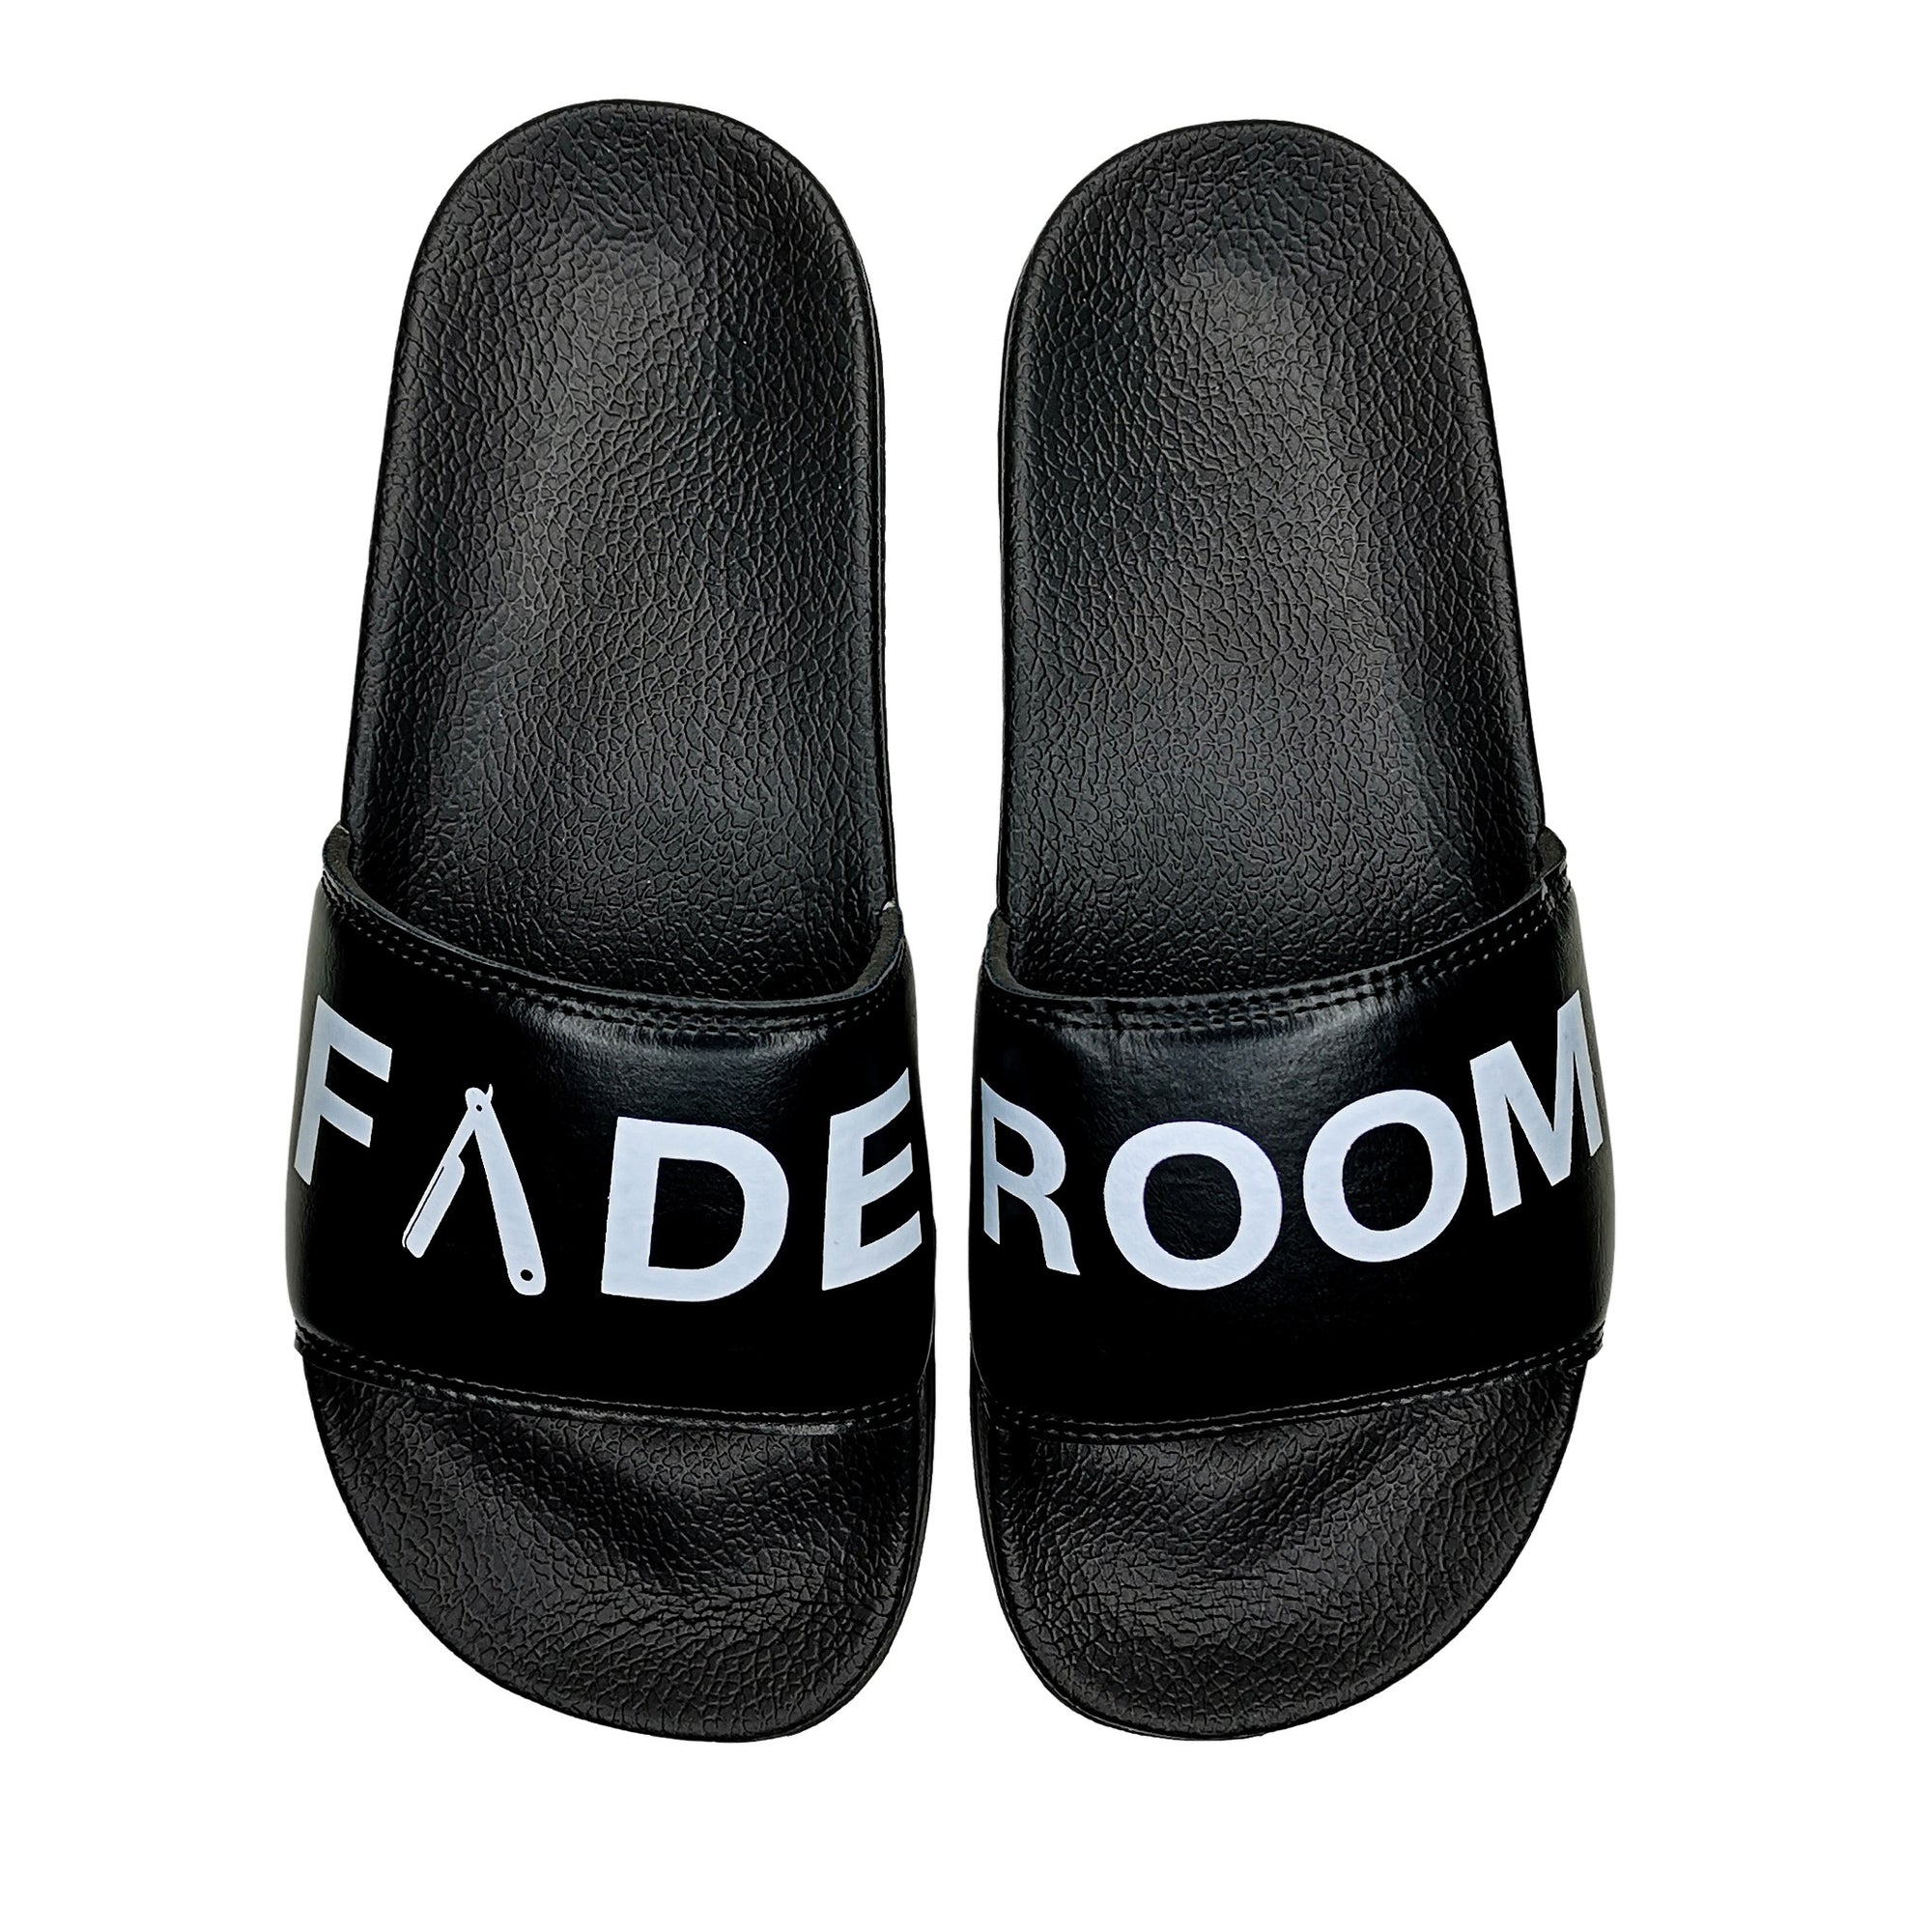 Fade Room | Slides | Black